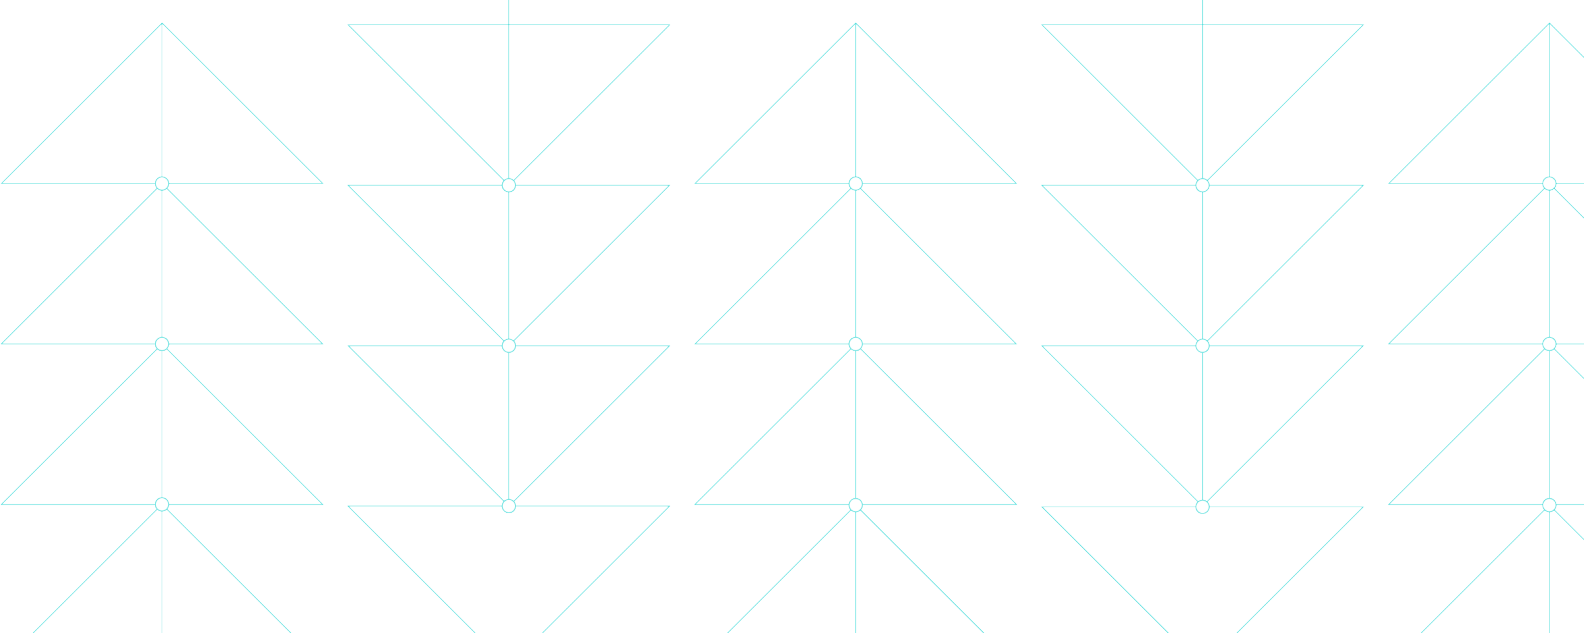 섬세한 삼각형 패턴을 형성하는 얇은 파란색 선을 보여주는 그림